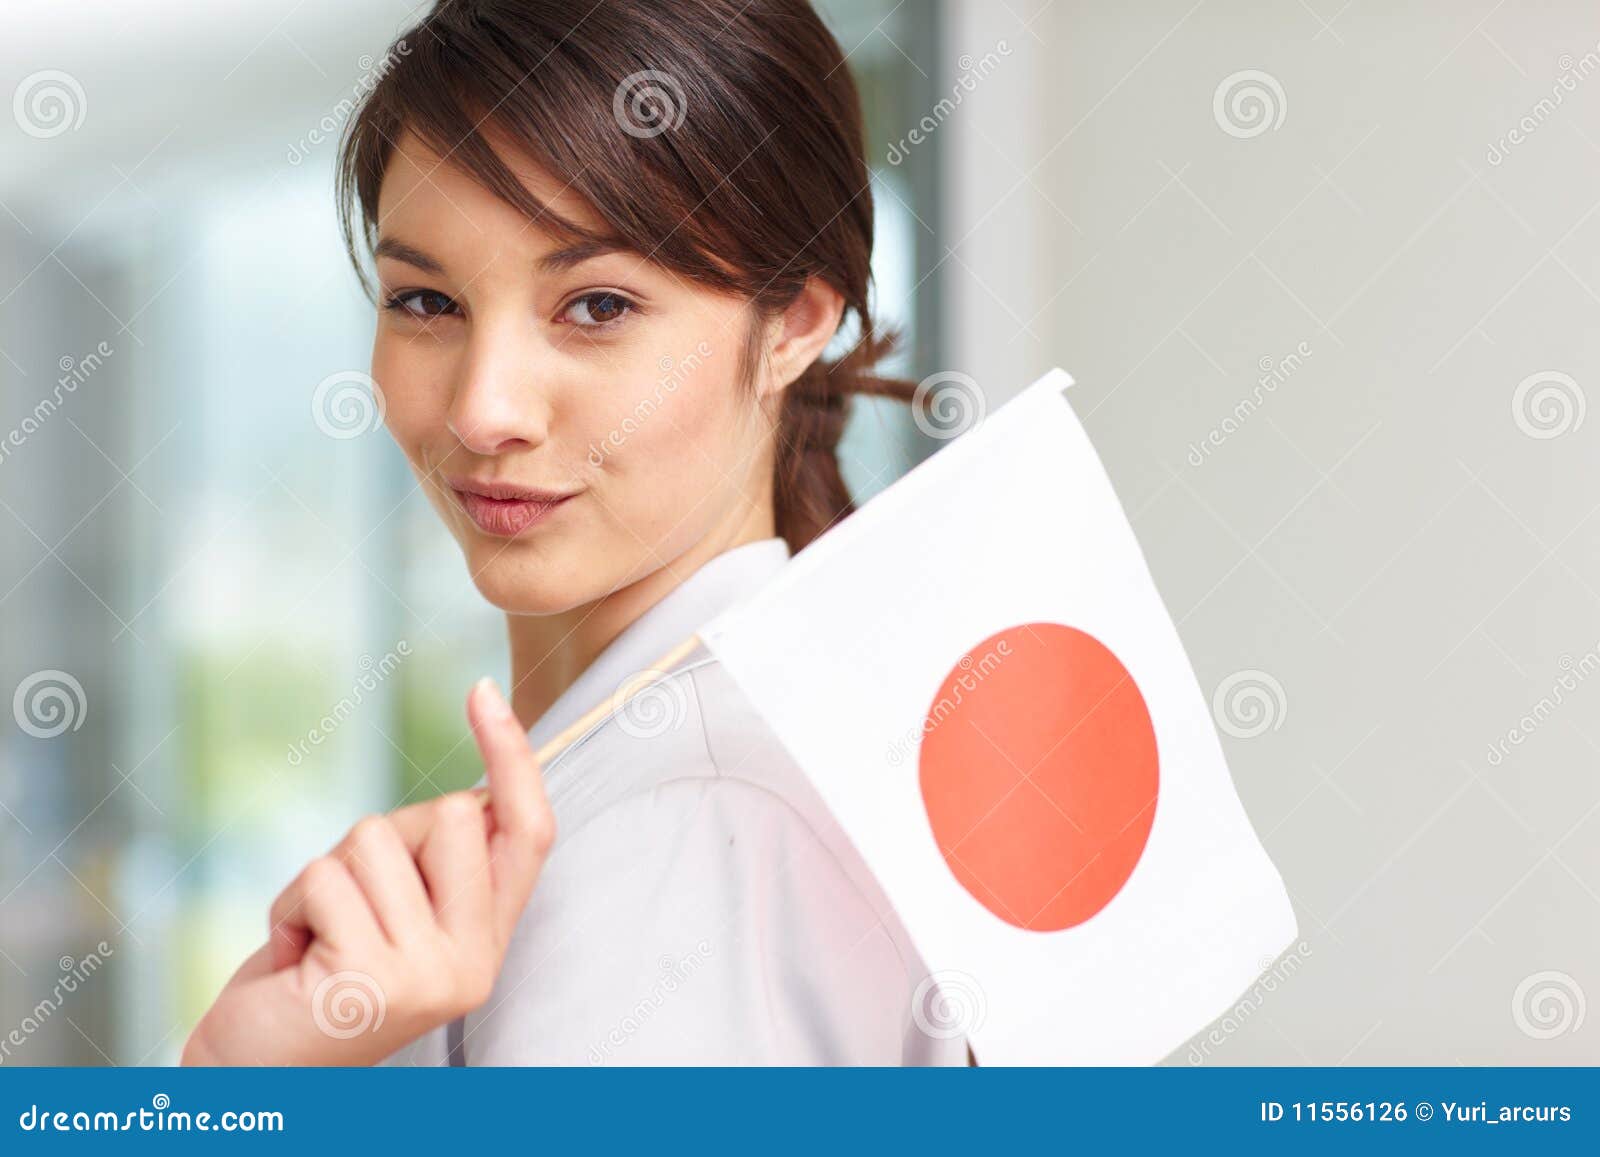 Язык сан. Японский язык фото. Японцы с флагом Японии. Японцы обращаются Сан. Японцы Япония флаг работа.